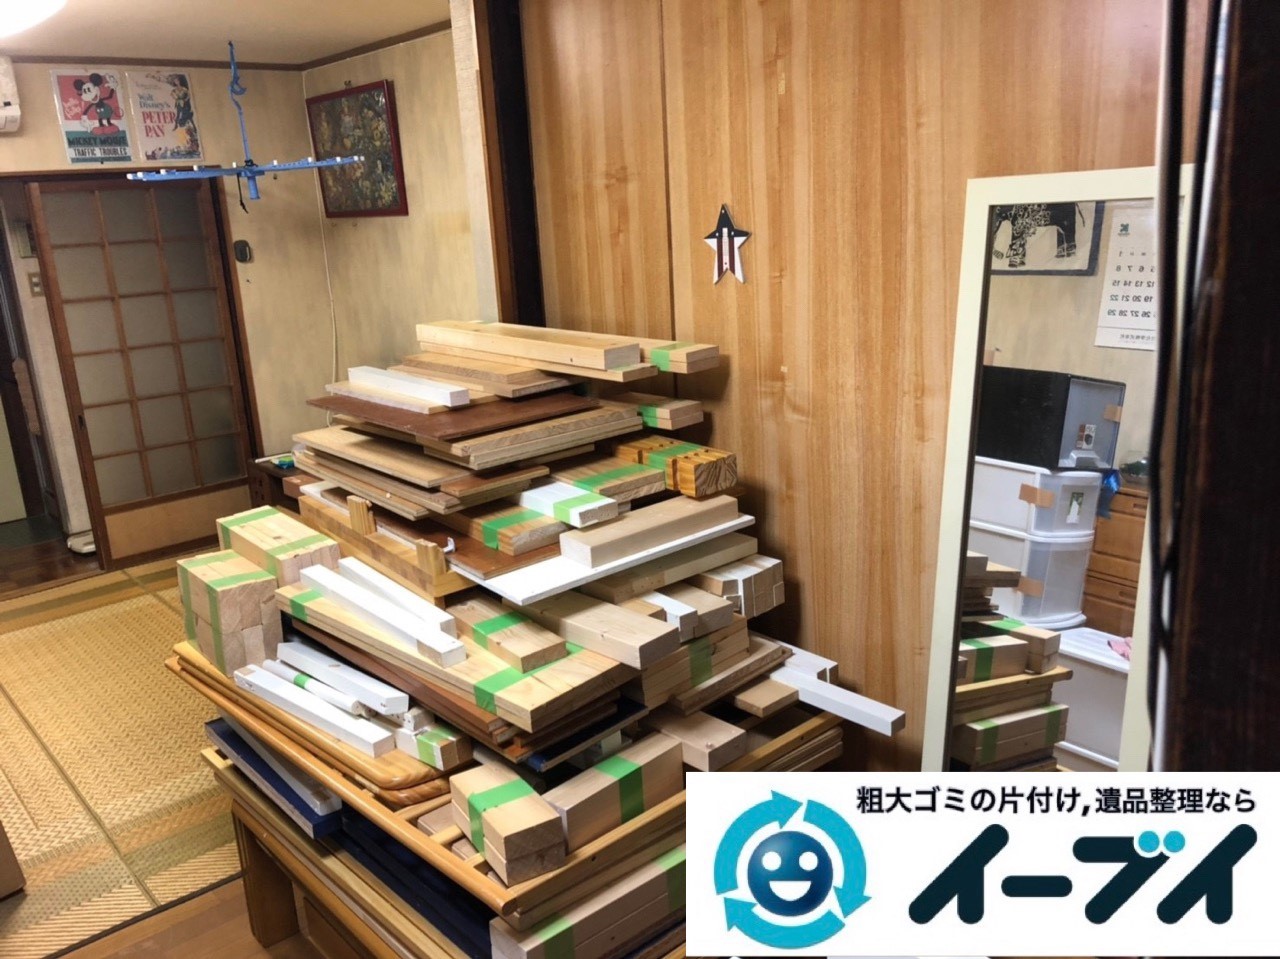 2018年11月29日大阪府大阪市住吉区で引っ越しに伴い不要な家具などの回収処分。写真4